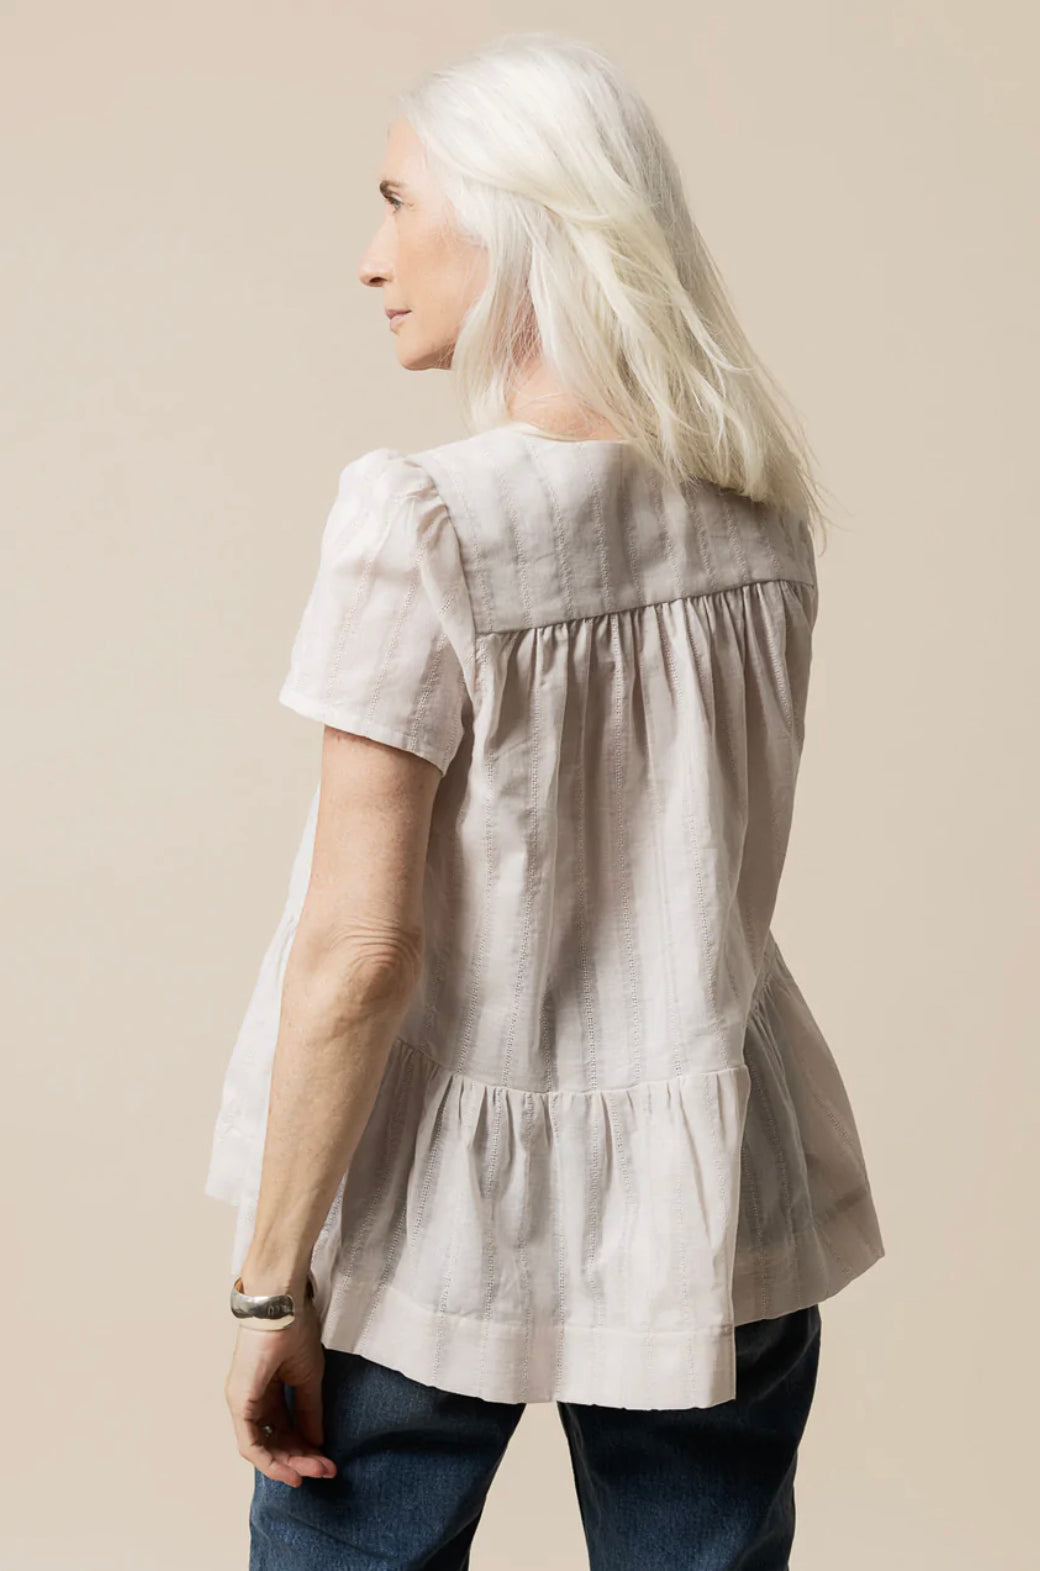 Closet Core - Nicks Dress & Blouse Sewing Pattern